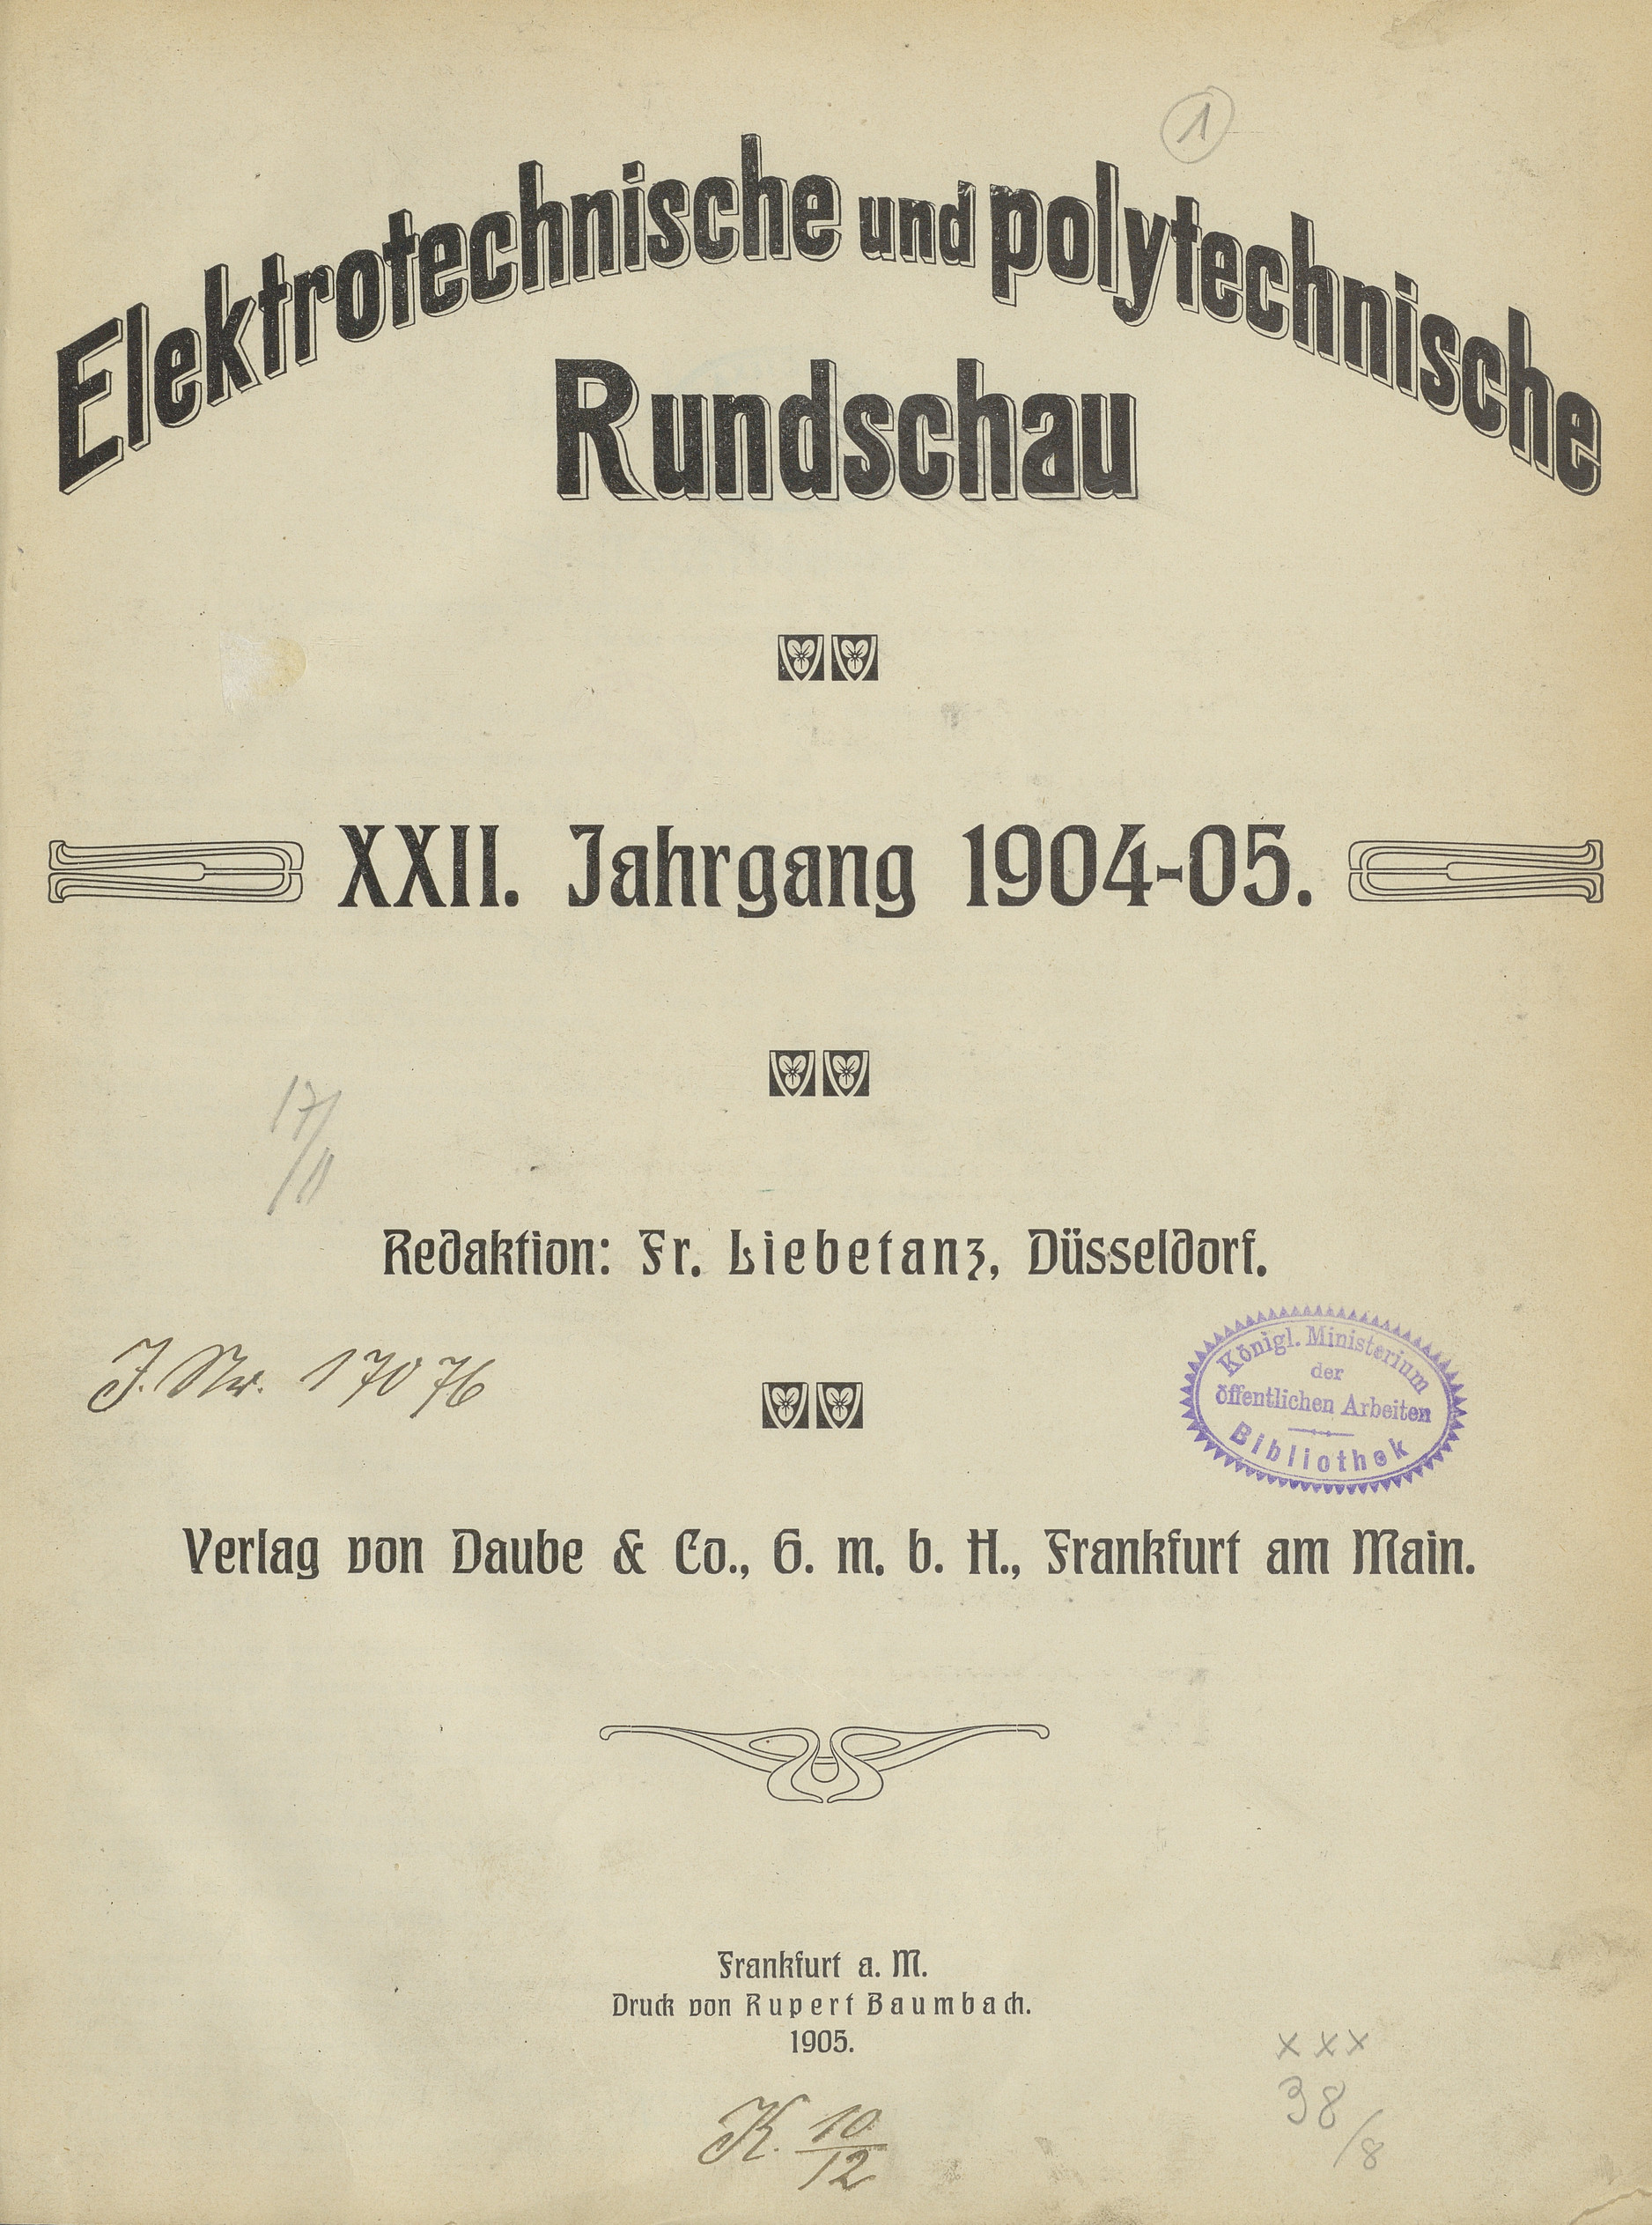 Elektrotechnische und polytechnische Rundschau, 1904-1905, Index